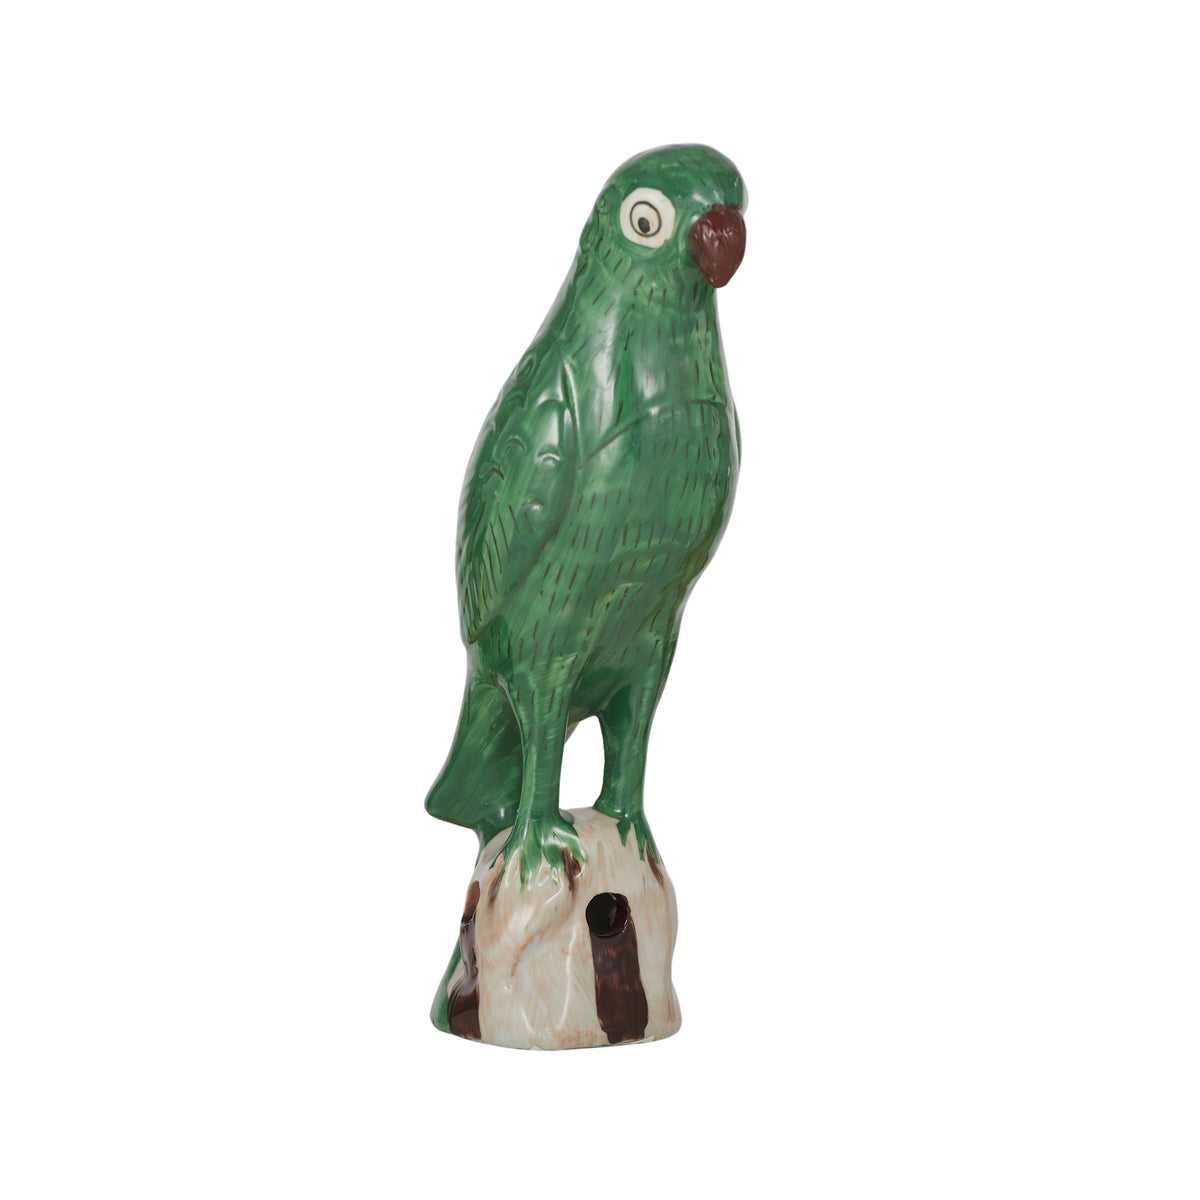 Pablo Emerald Parrot Sculpture